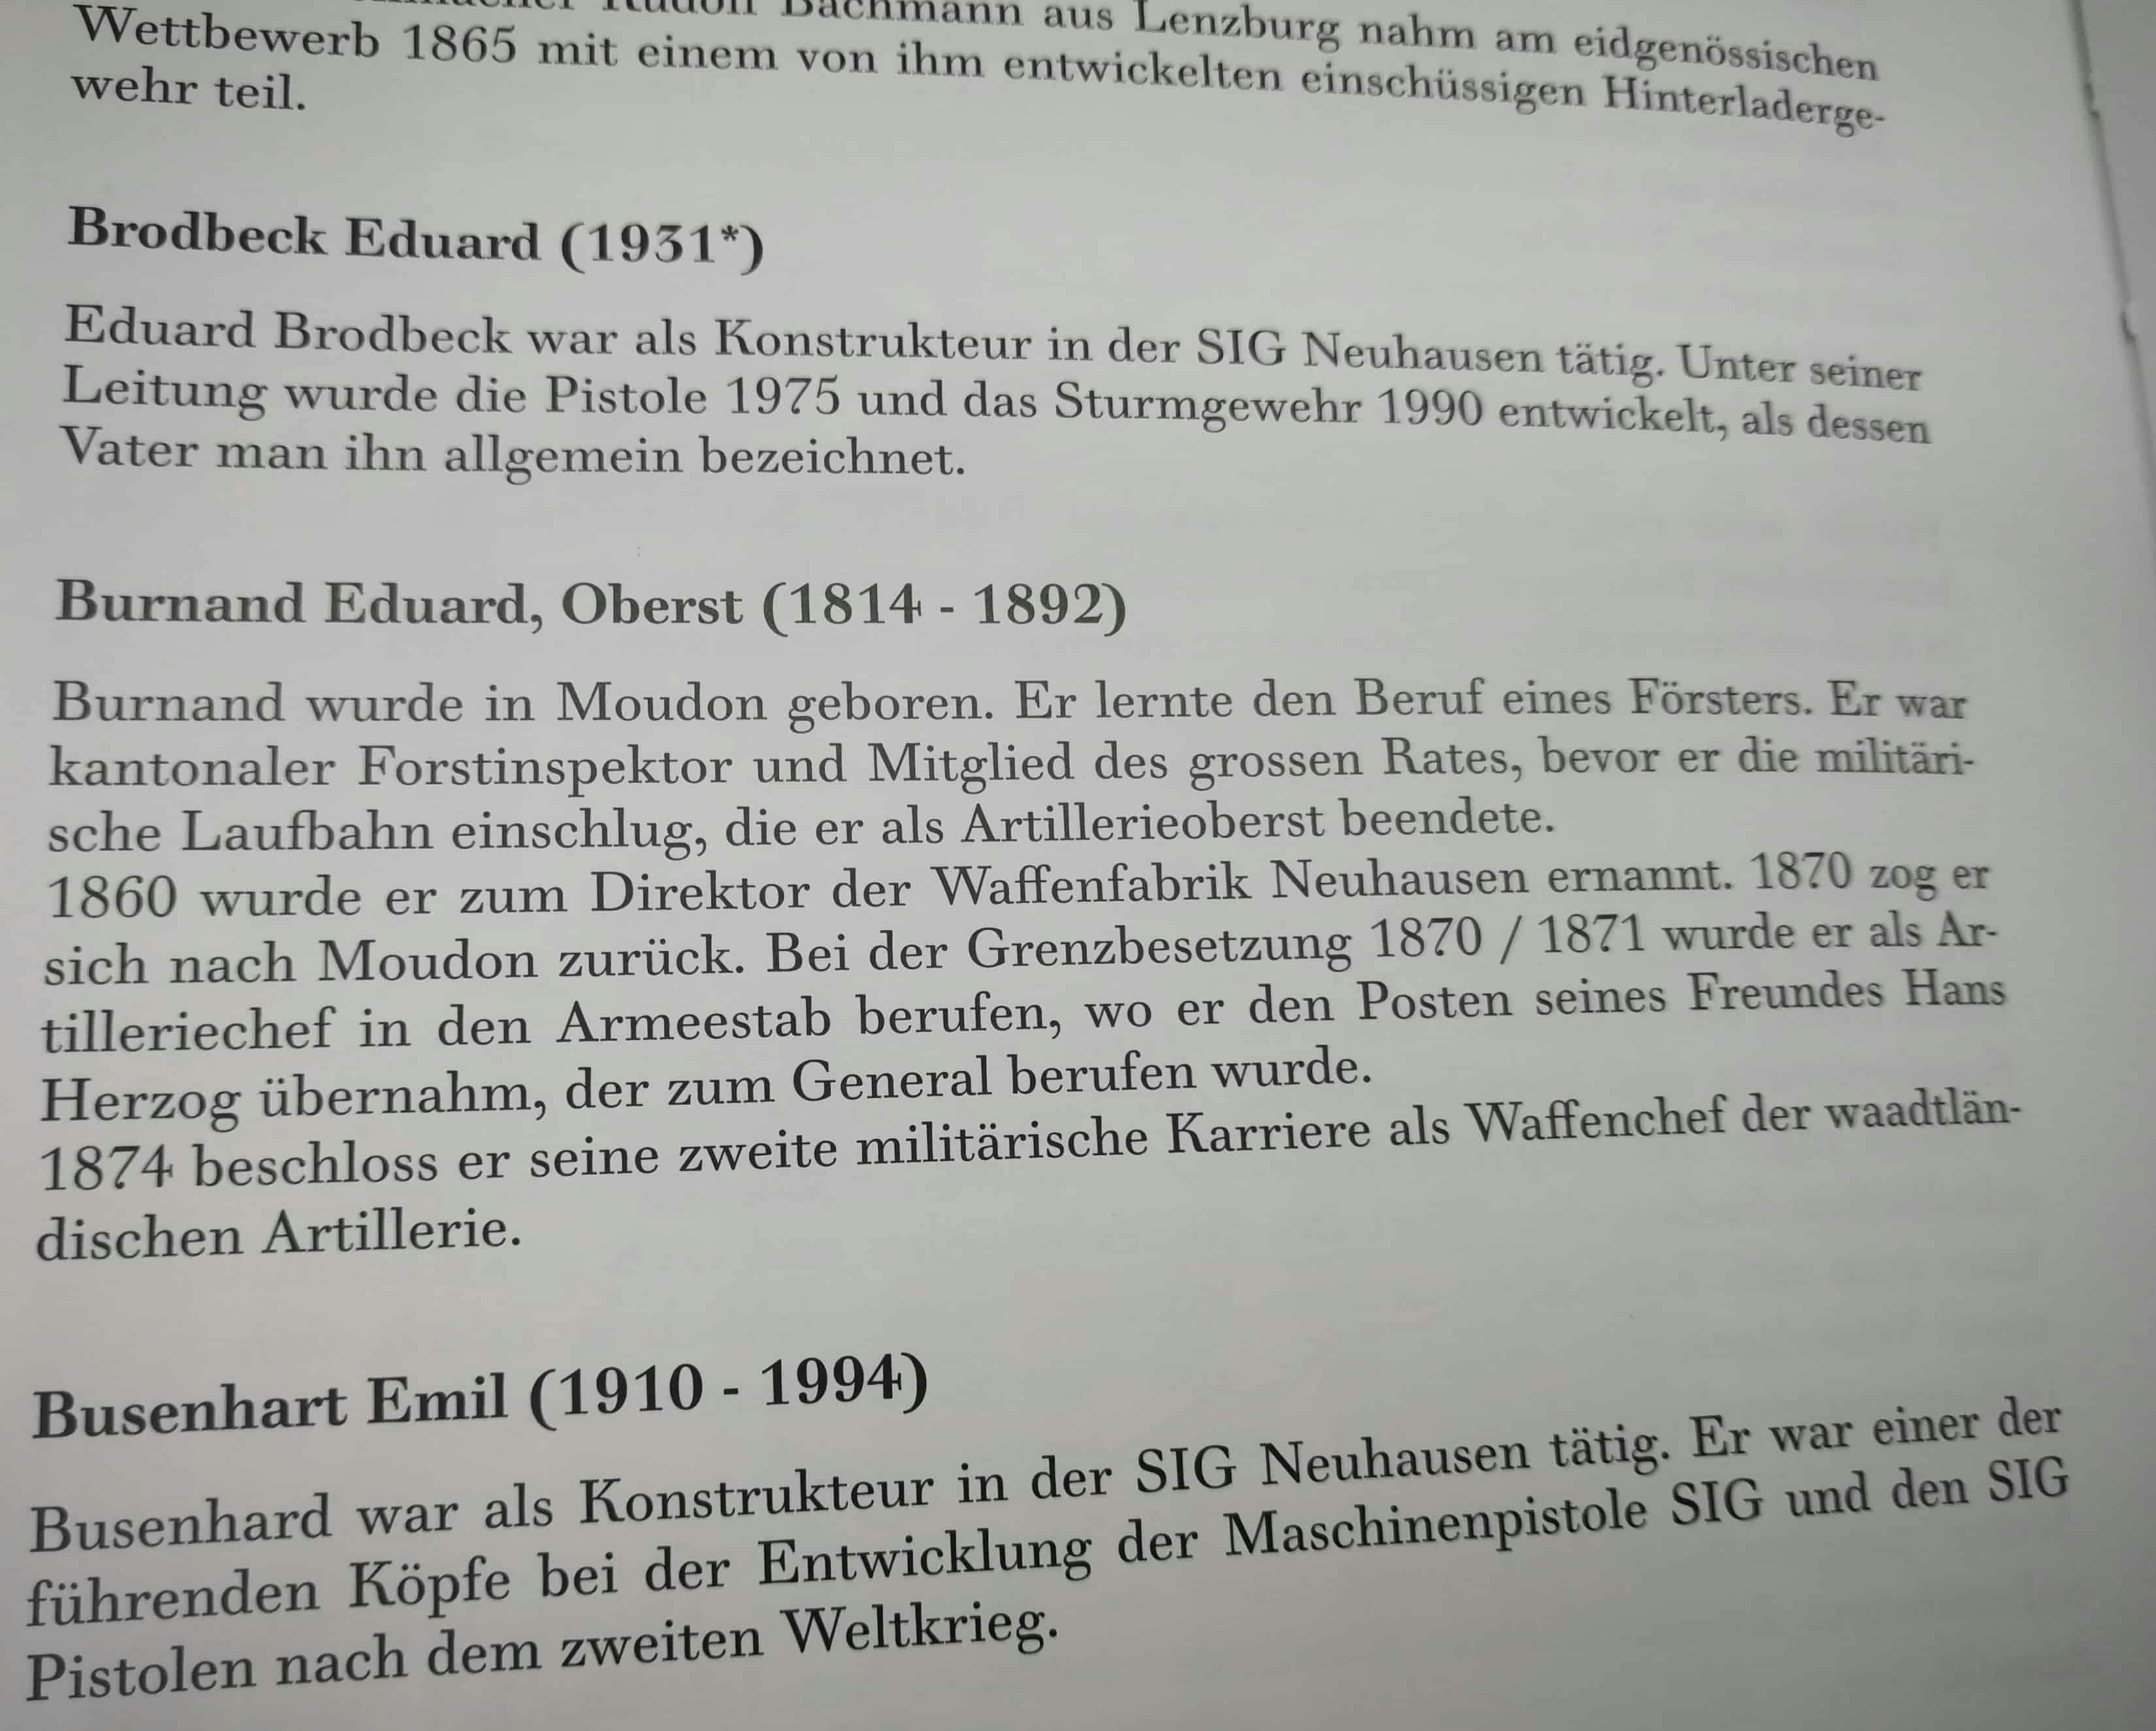 Namhafte Entwickler und Beteiligte an der Schweizer Waffengeschichte finden auch Erwähnung. Mit Brodbeck und Busenhart zwei Institutionen der SIG.